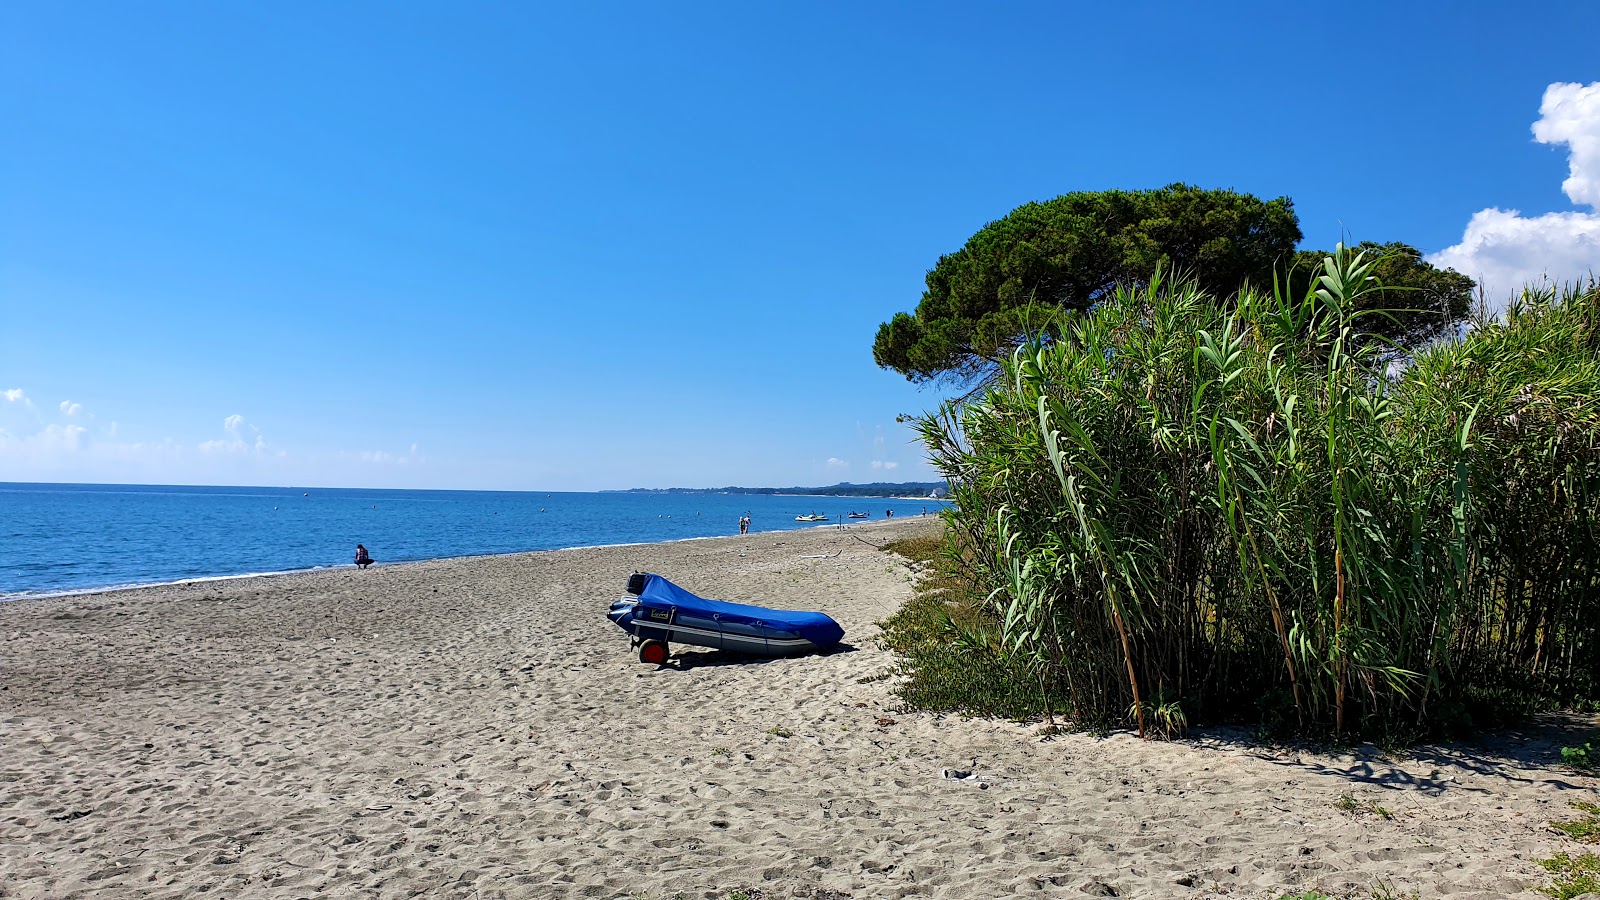 Photo de Ponticchio beach - endroit populaire parmi les connaisseurs de la détente